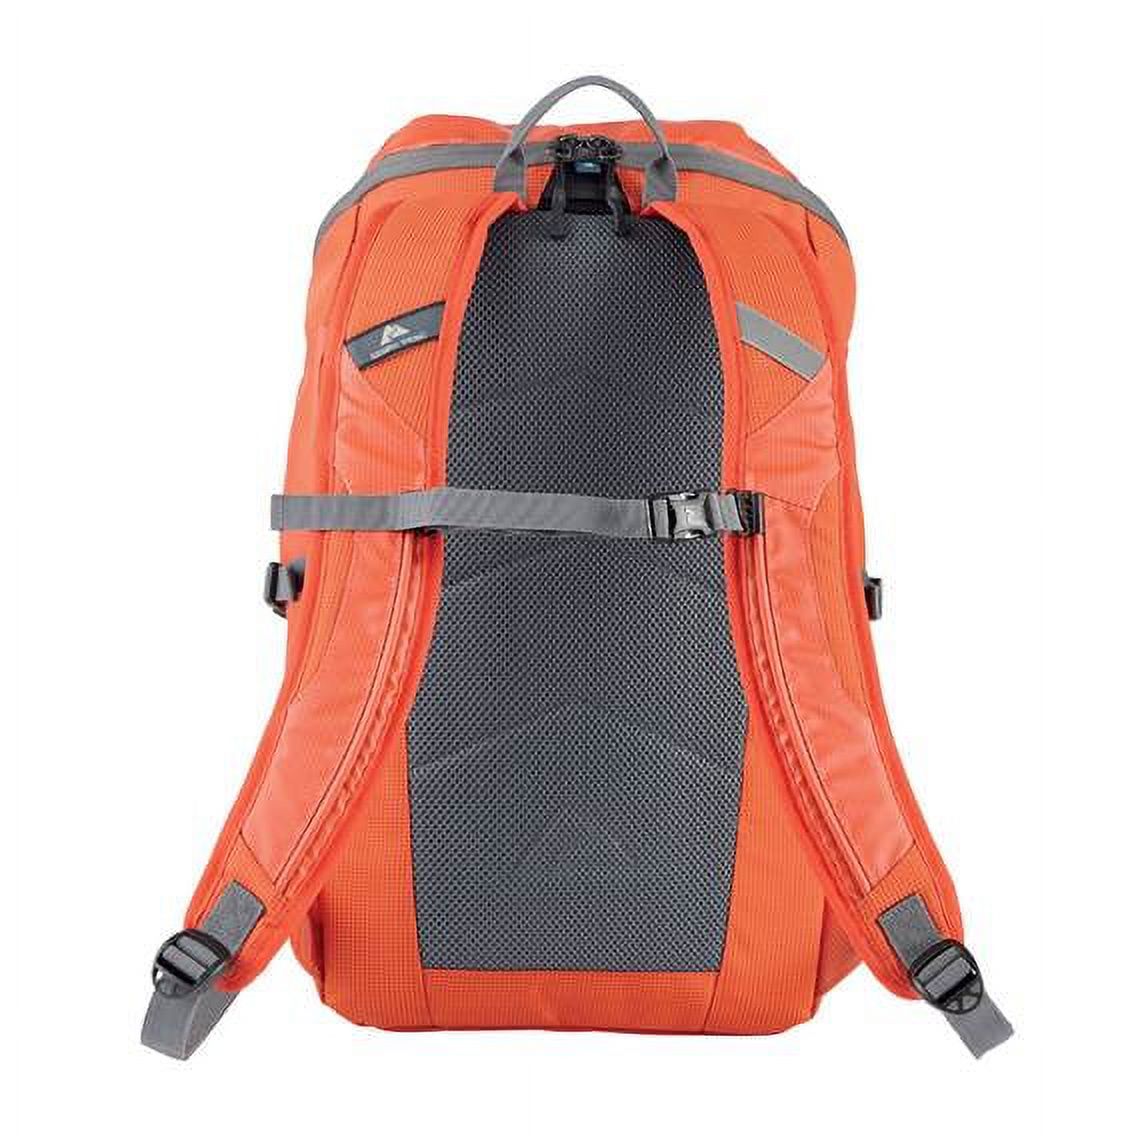 Ozark Trail 35 ltr Backpacking Backpack, Orange - image 3 of 5